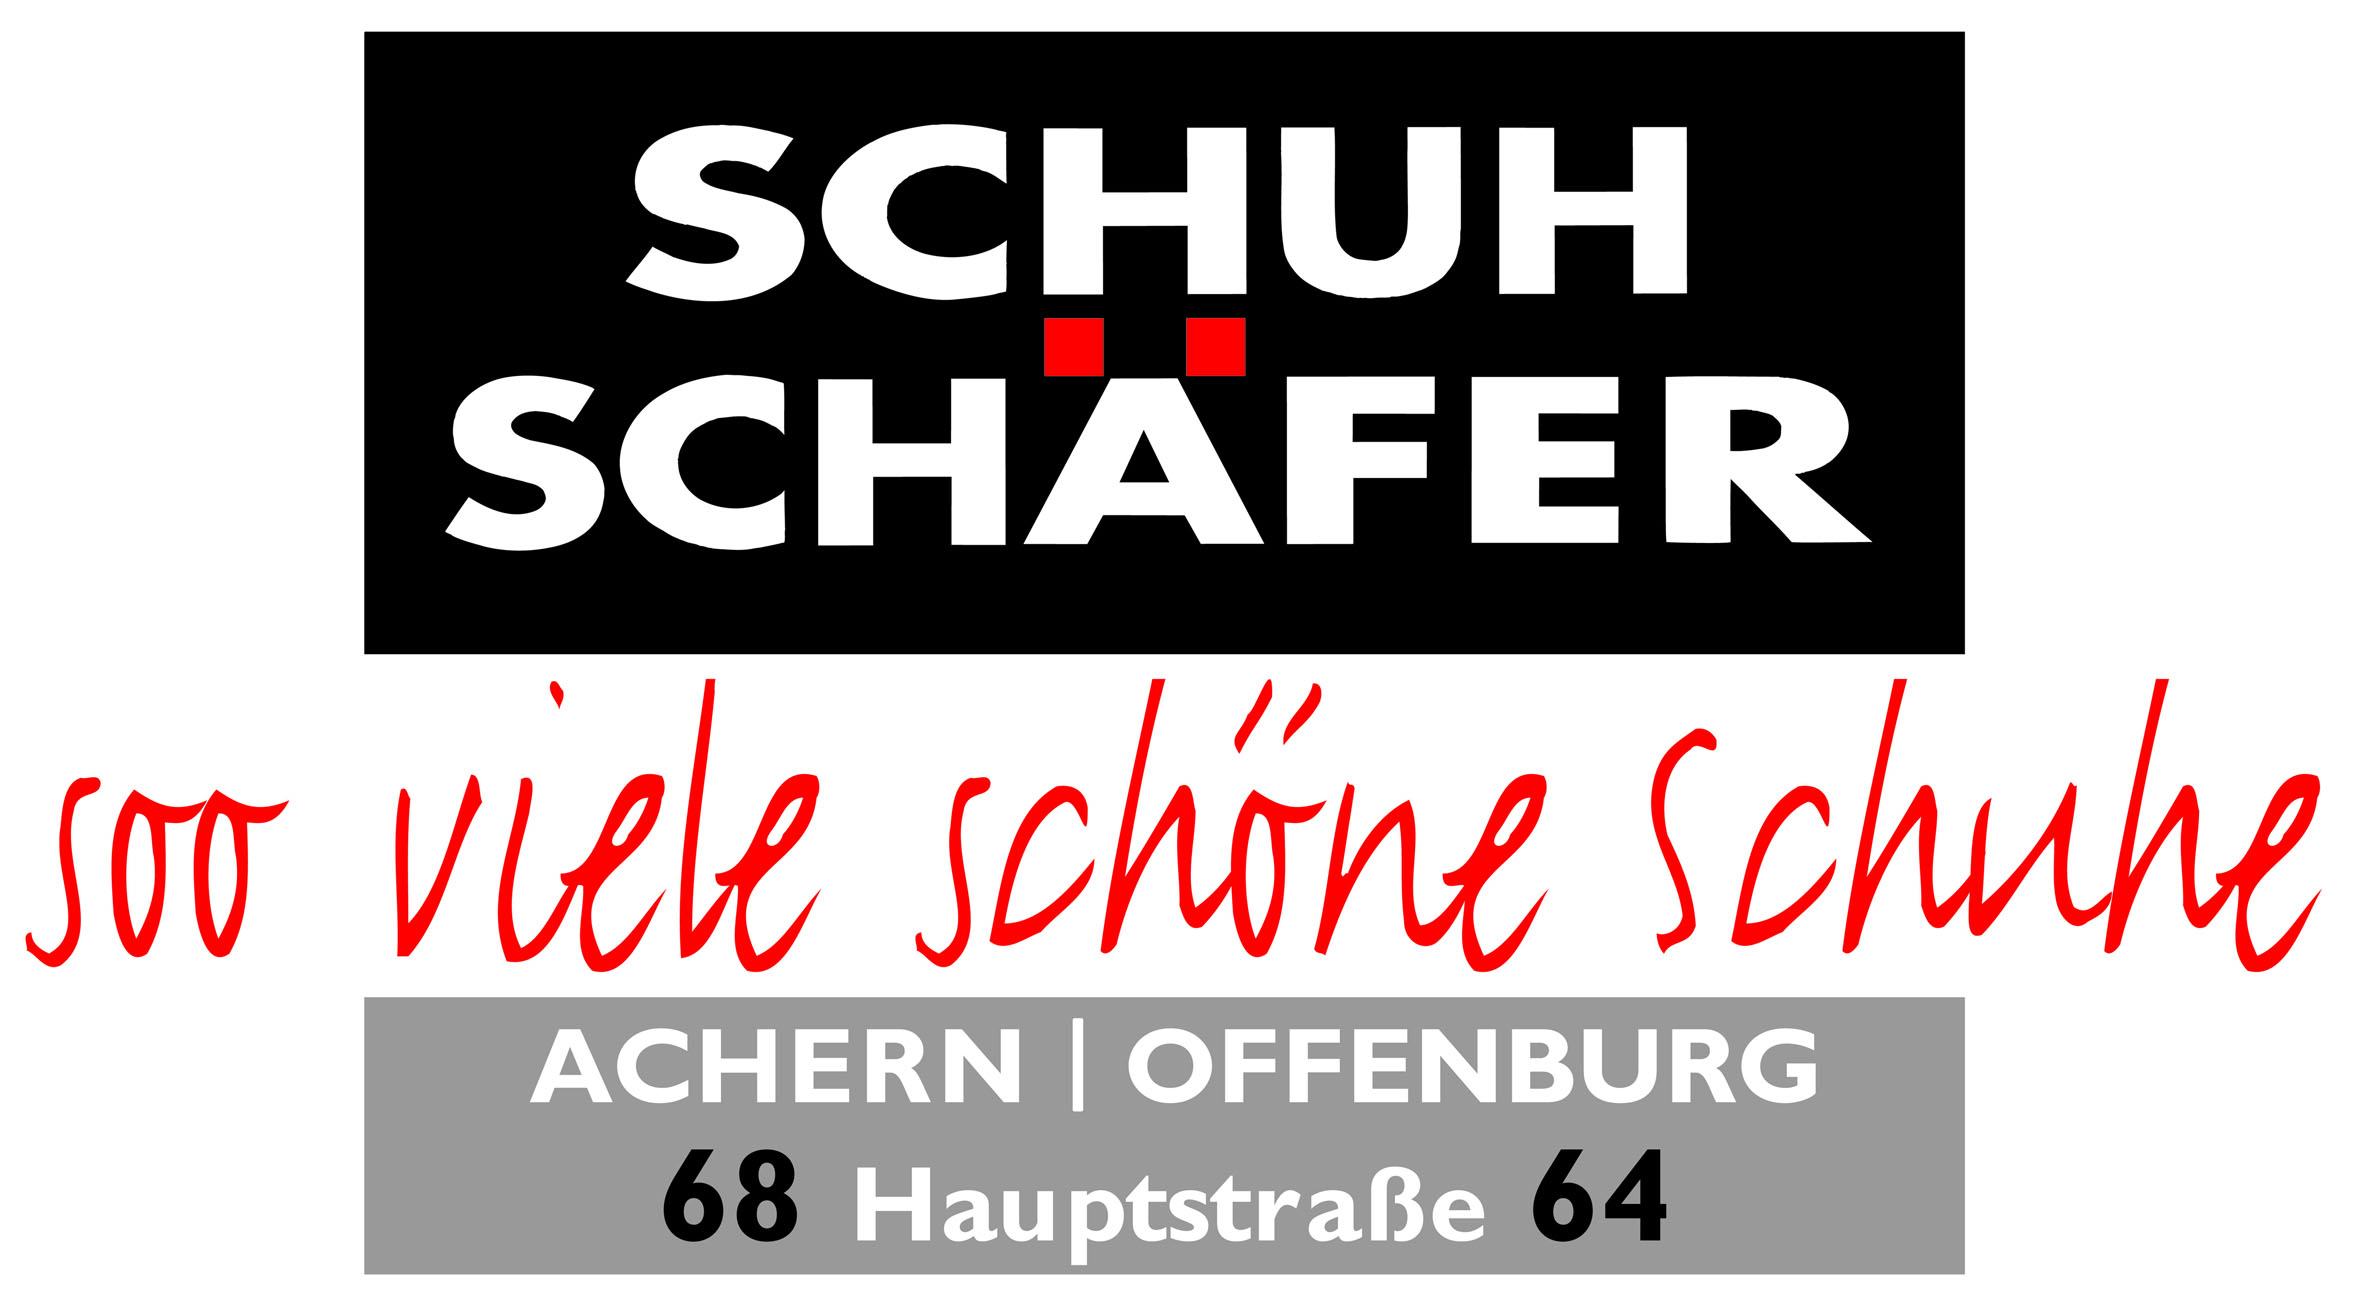                                                     Schuh Schäfer                                    